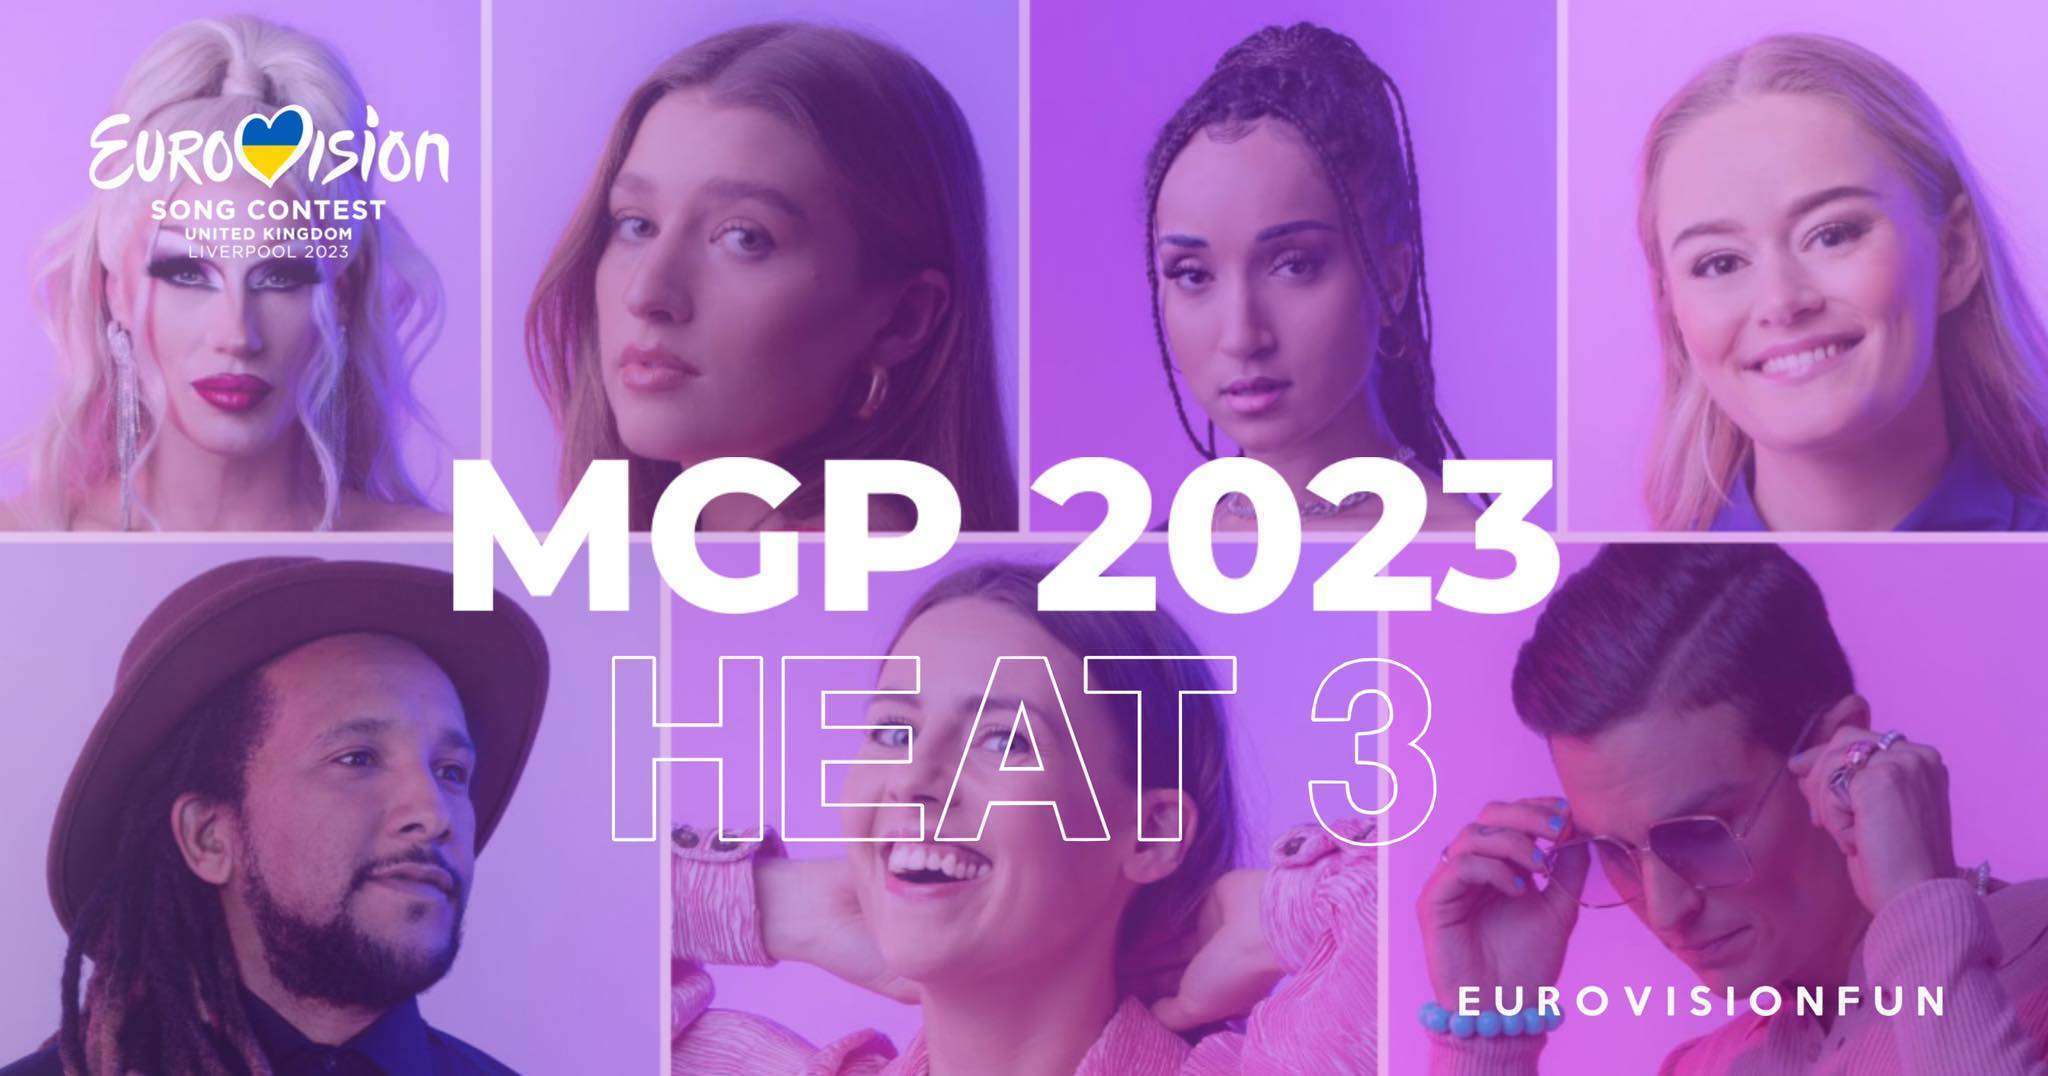 Norge: Heat 3 av MGP 2023 i kveld!  – Eurovision News |  Musikk